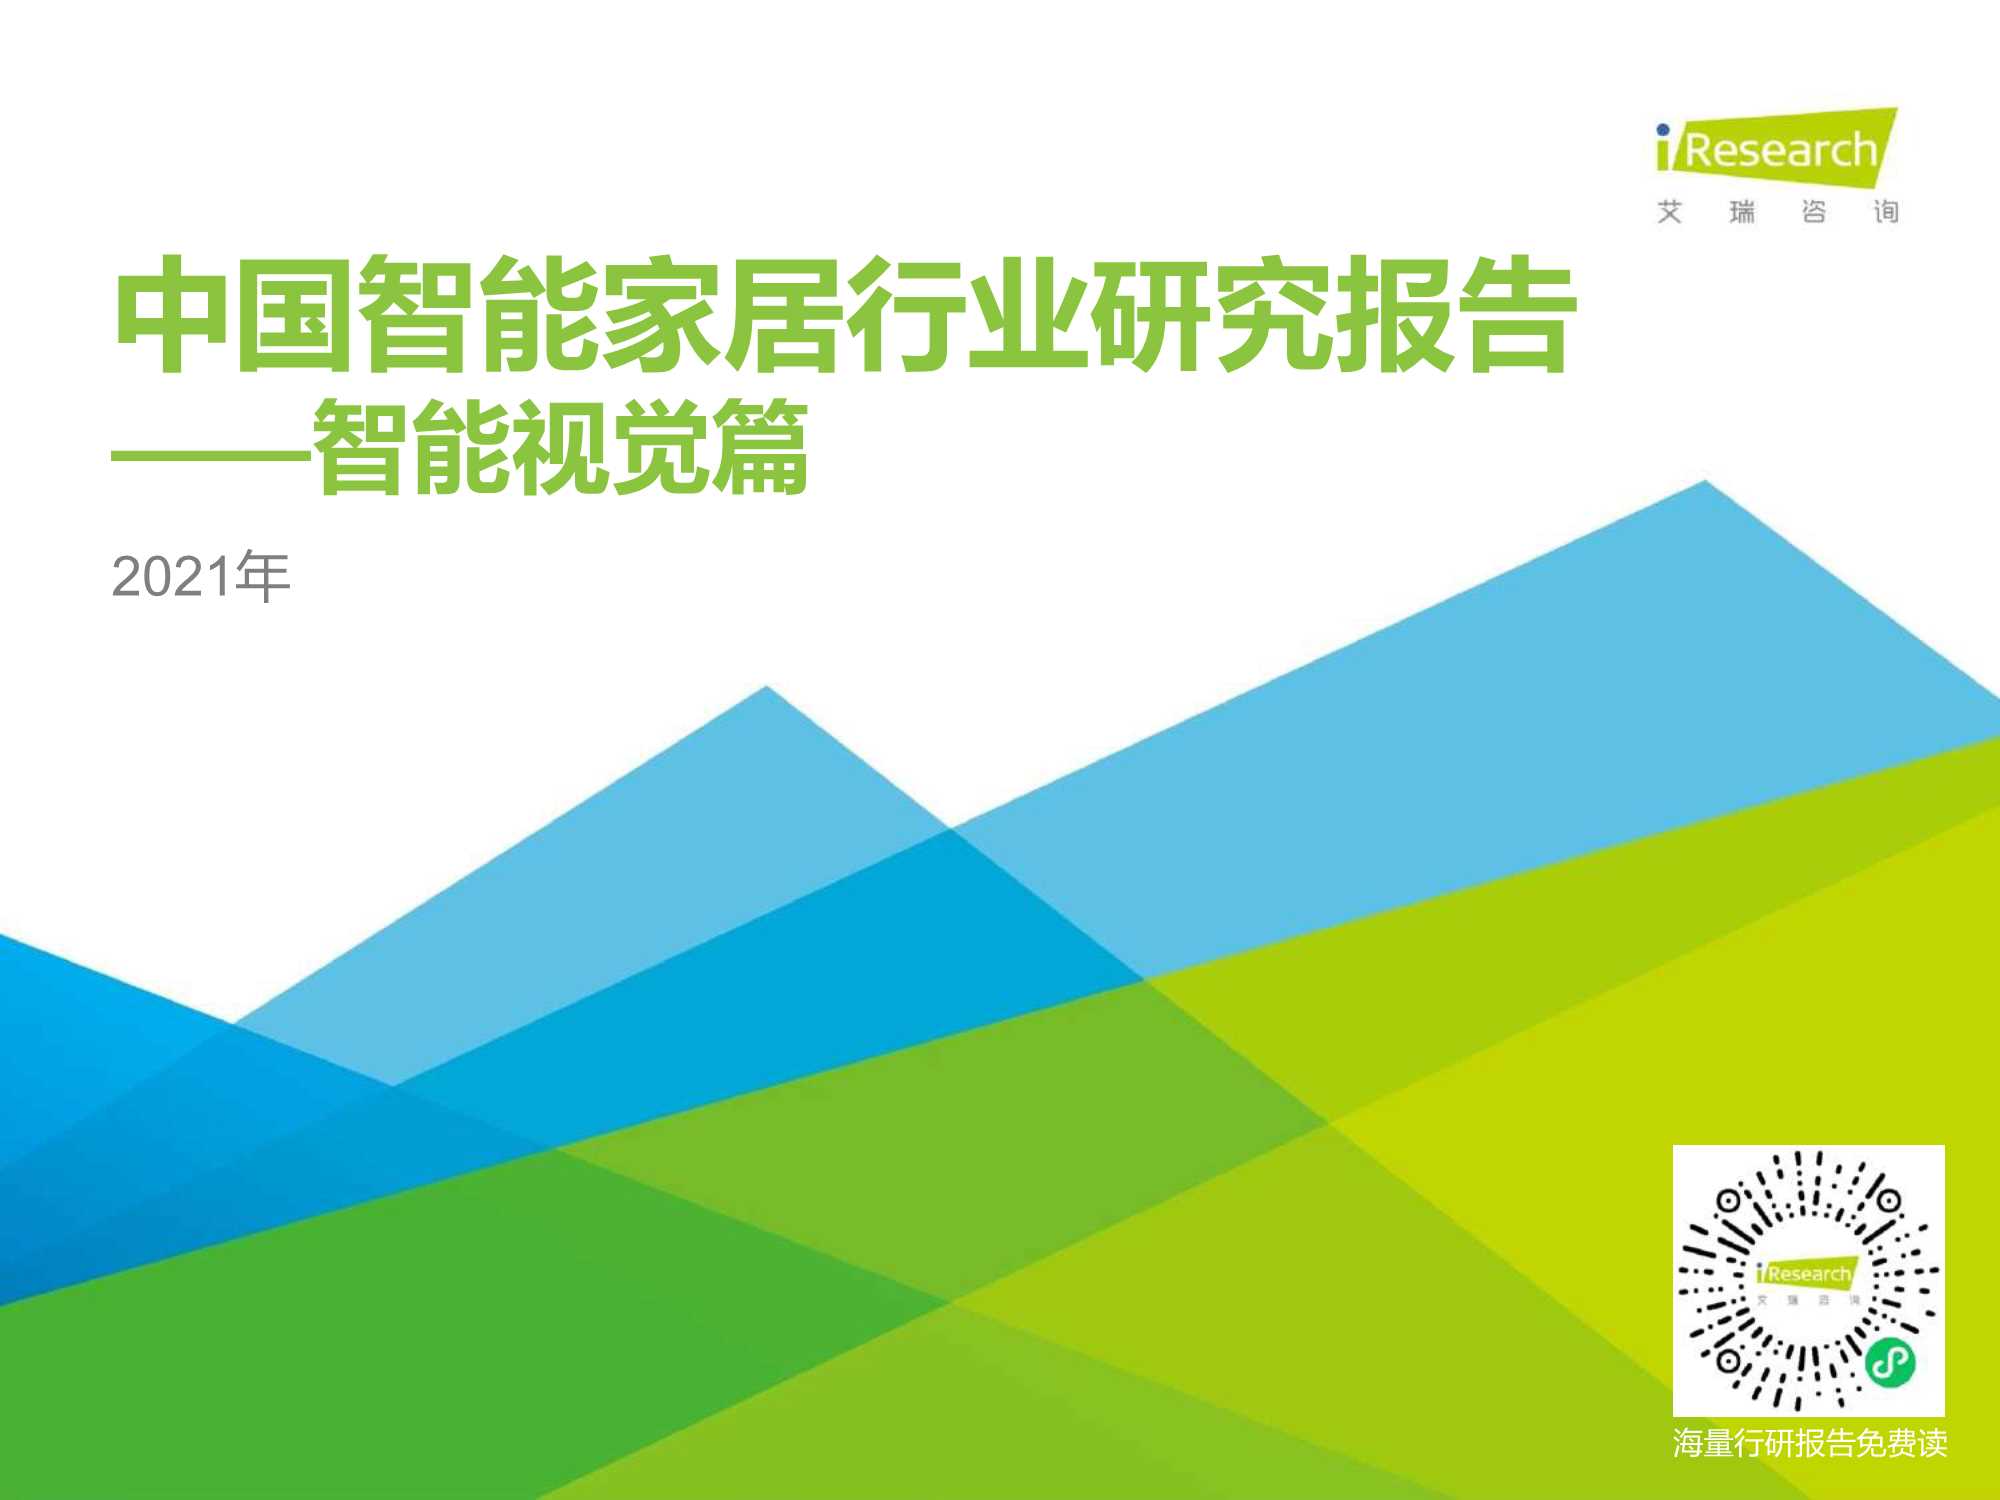 艾瑞咨询-2021年中国智能家居行业研究报告：智能视觉篇-2021.05-38页